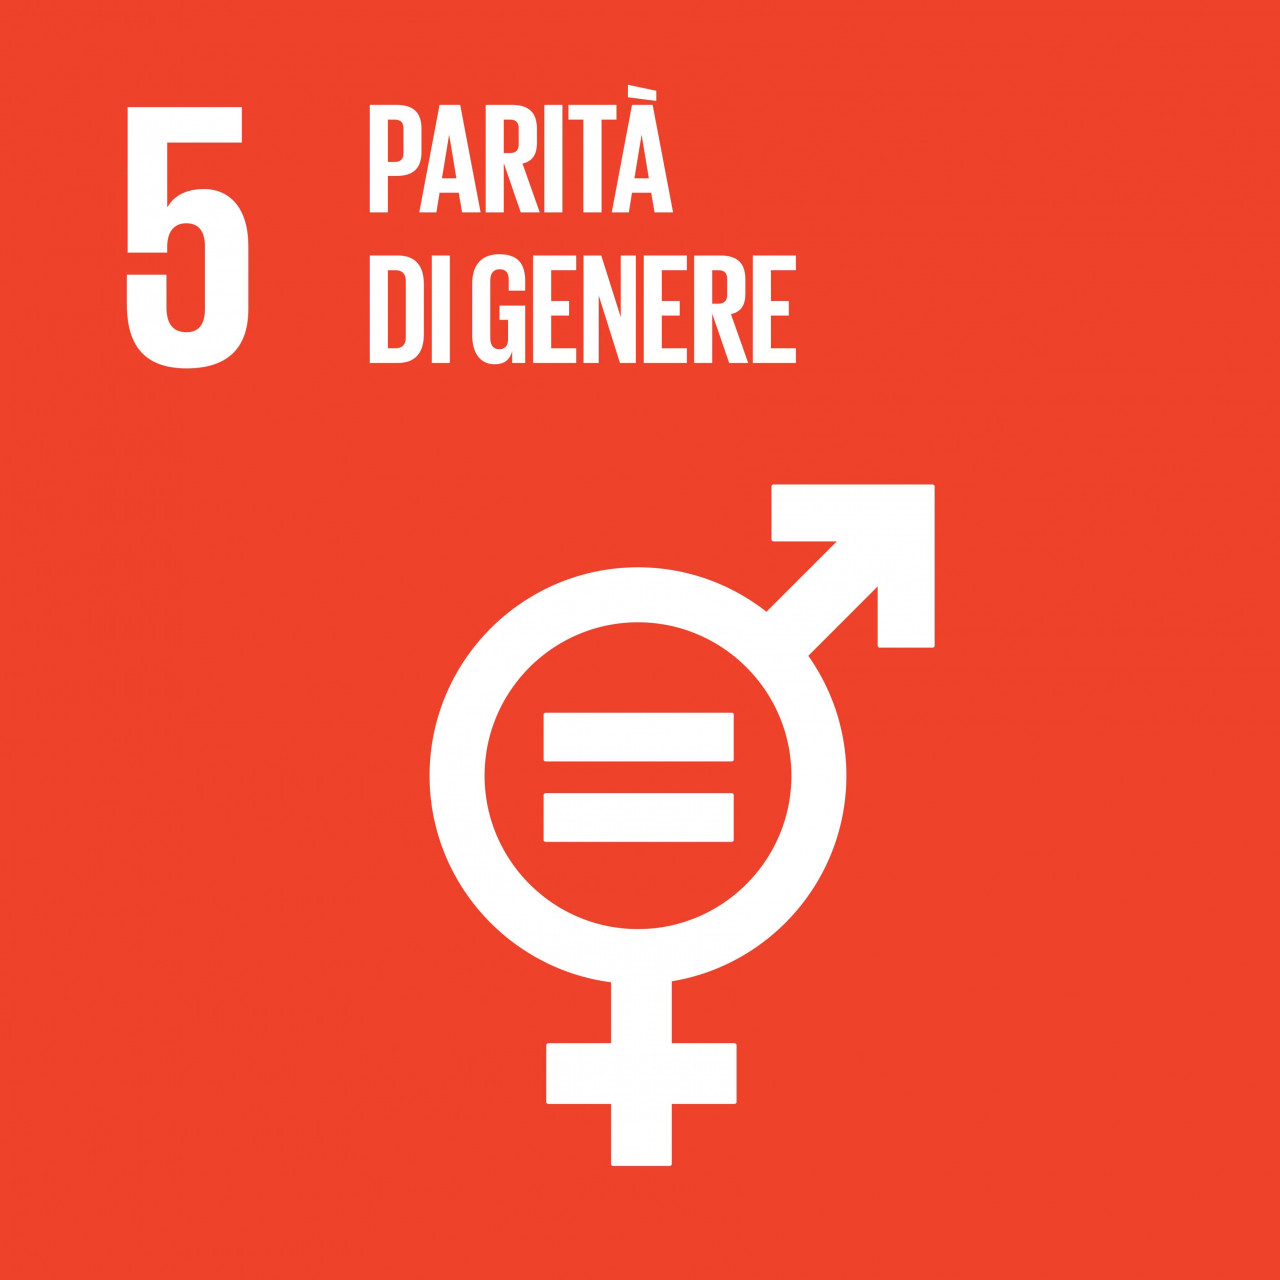 Obiettivo 5: Raggiungere l’uguaglianza di genere ed emancipare tutte le donne e le ragazze.